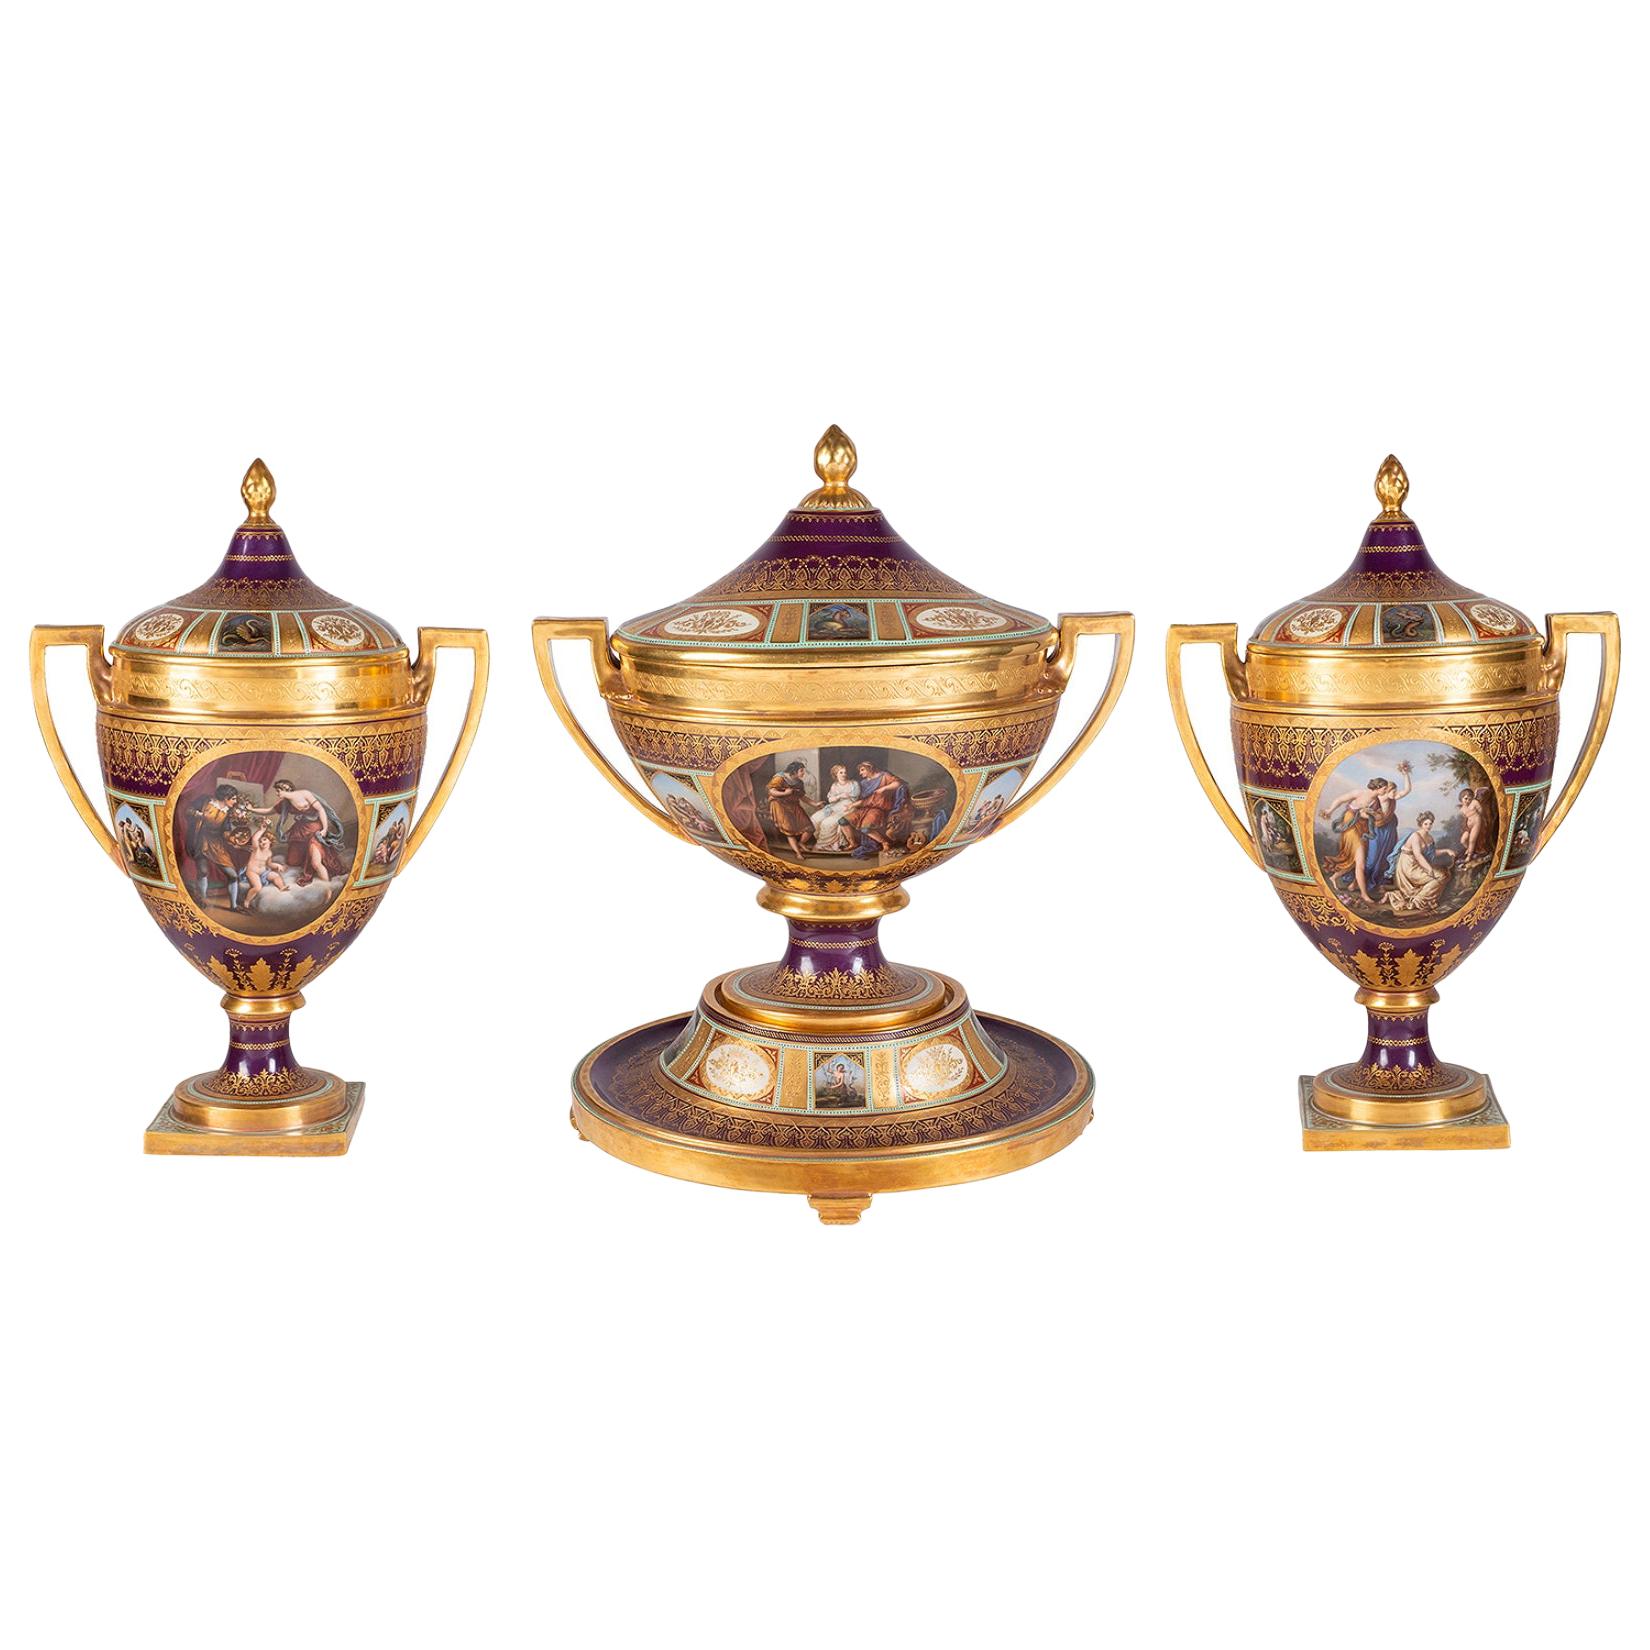 Garniture rare de trois grands vases à couvercle en porcelaine de style viennois du 19ème siècle